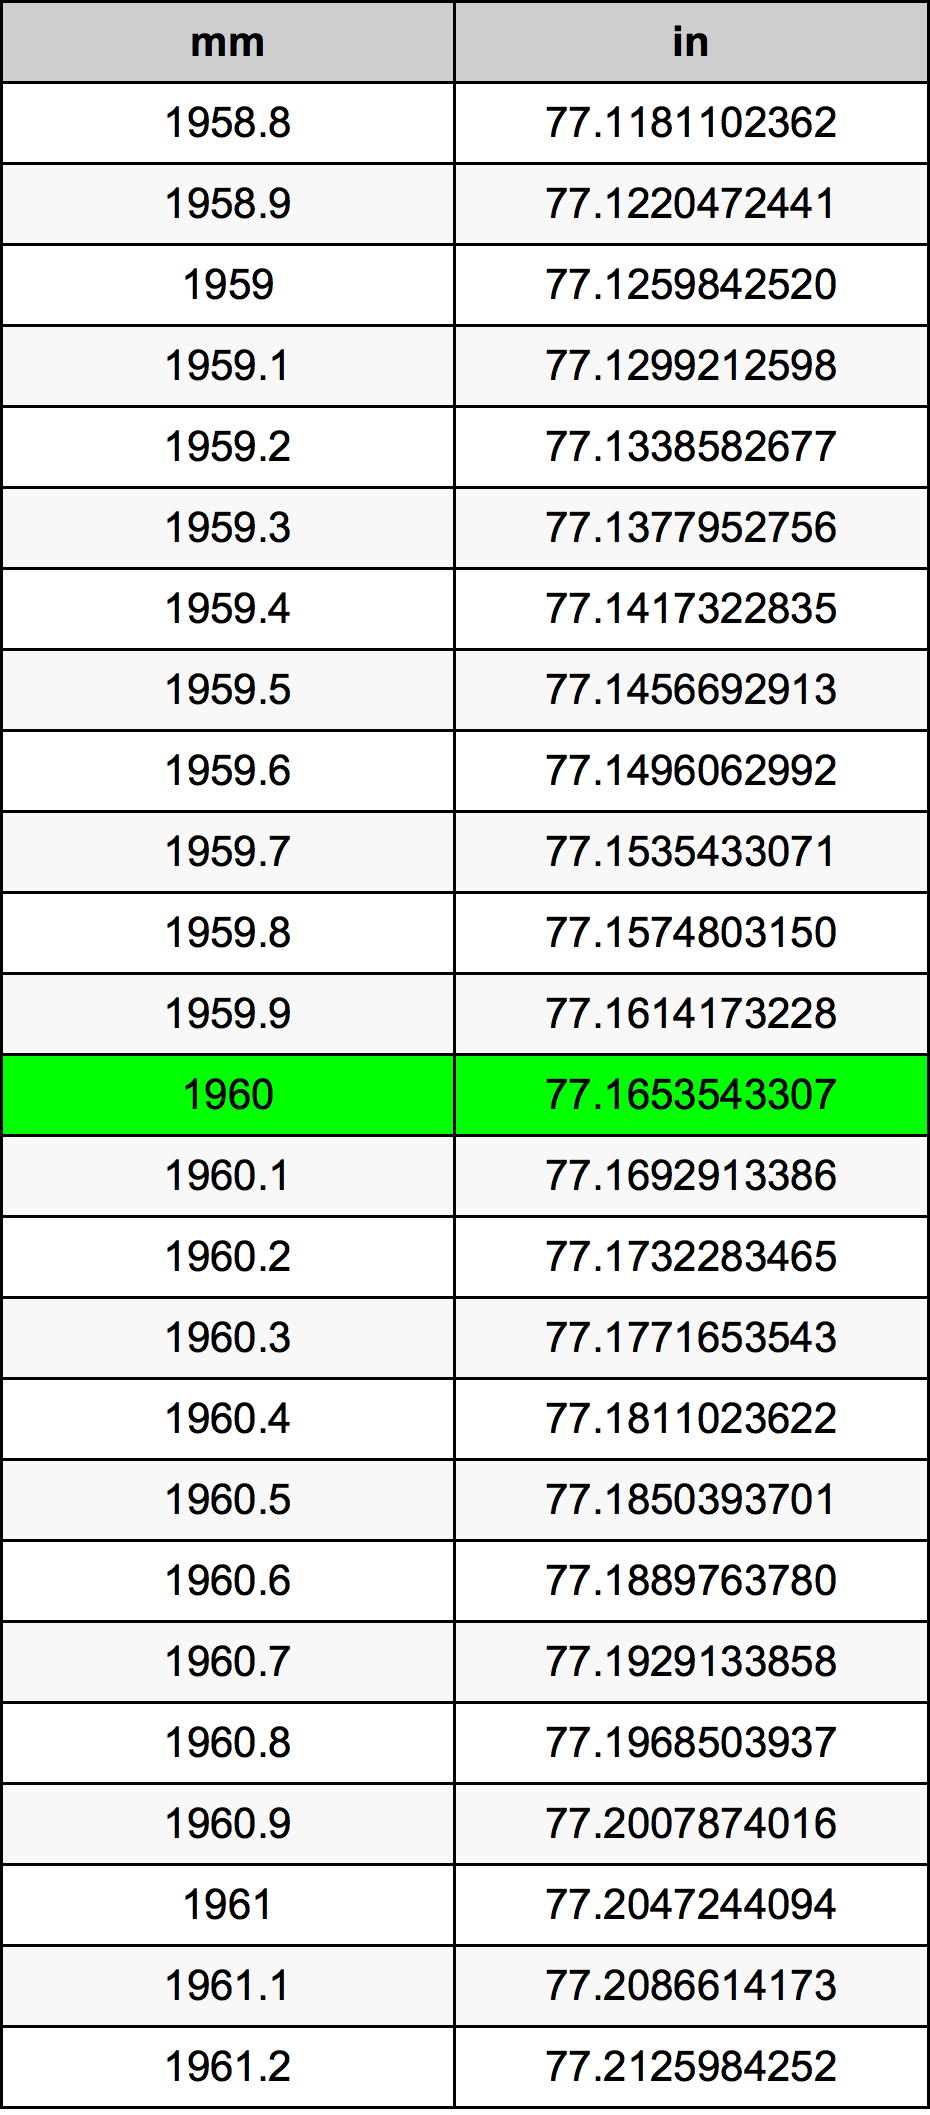 1960 Milimetru tabelul de conversie